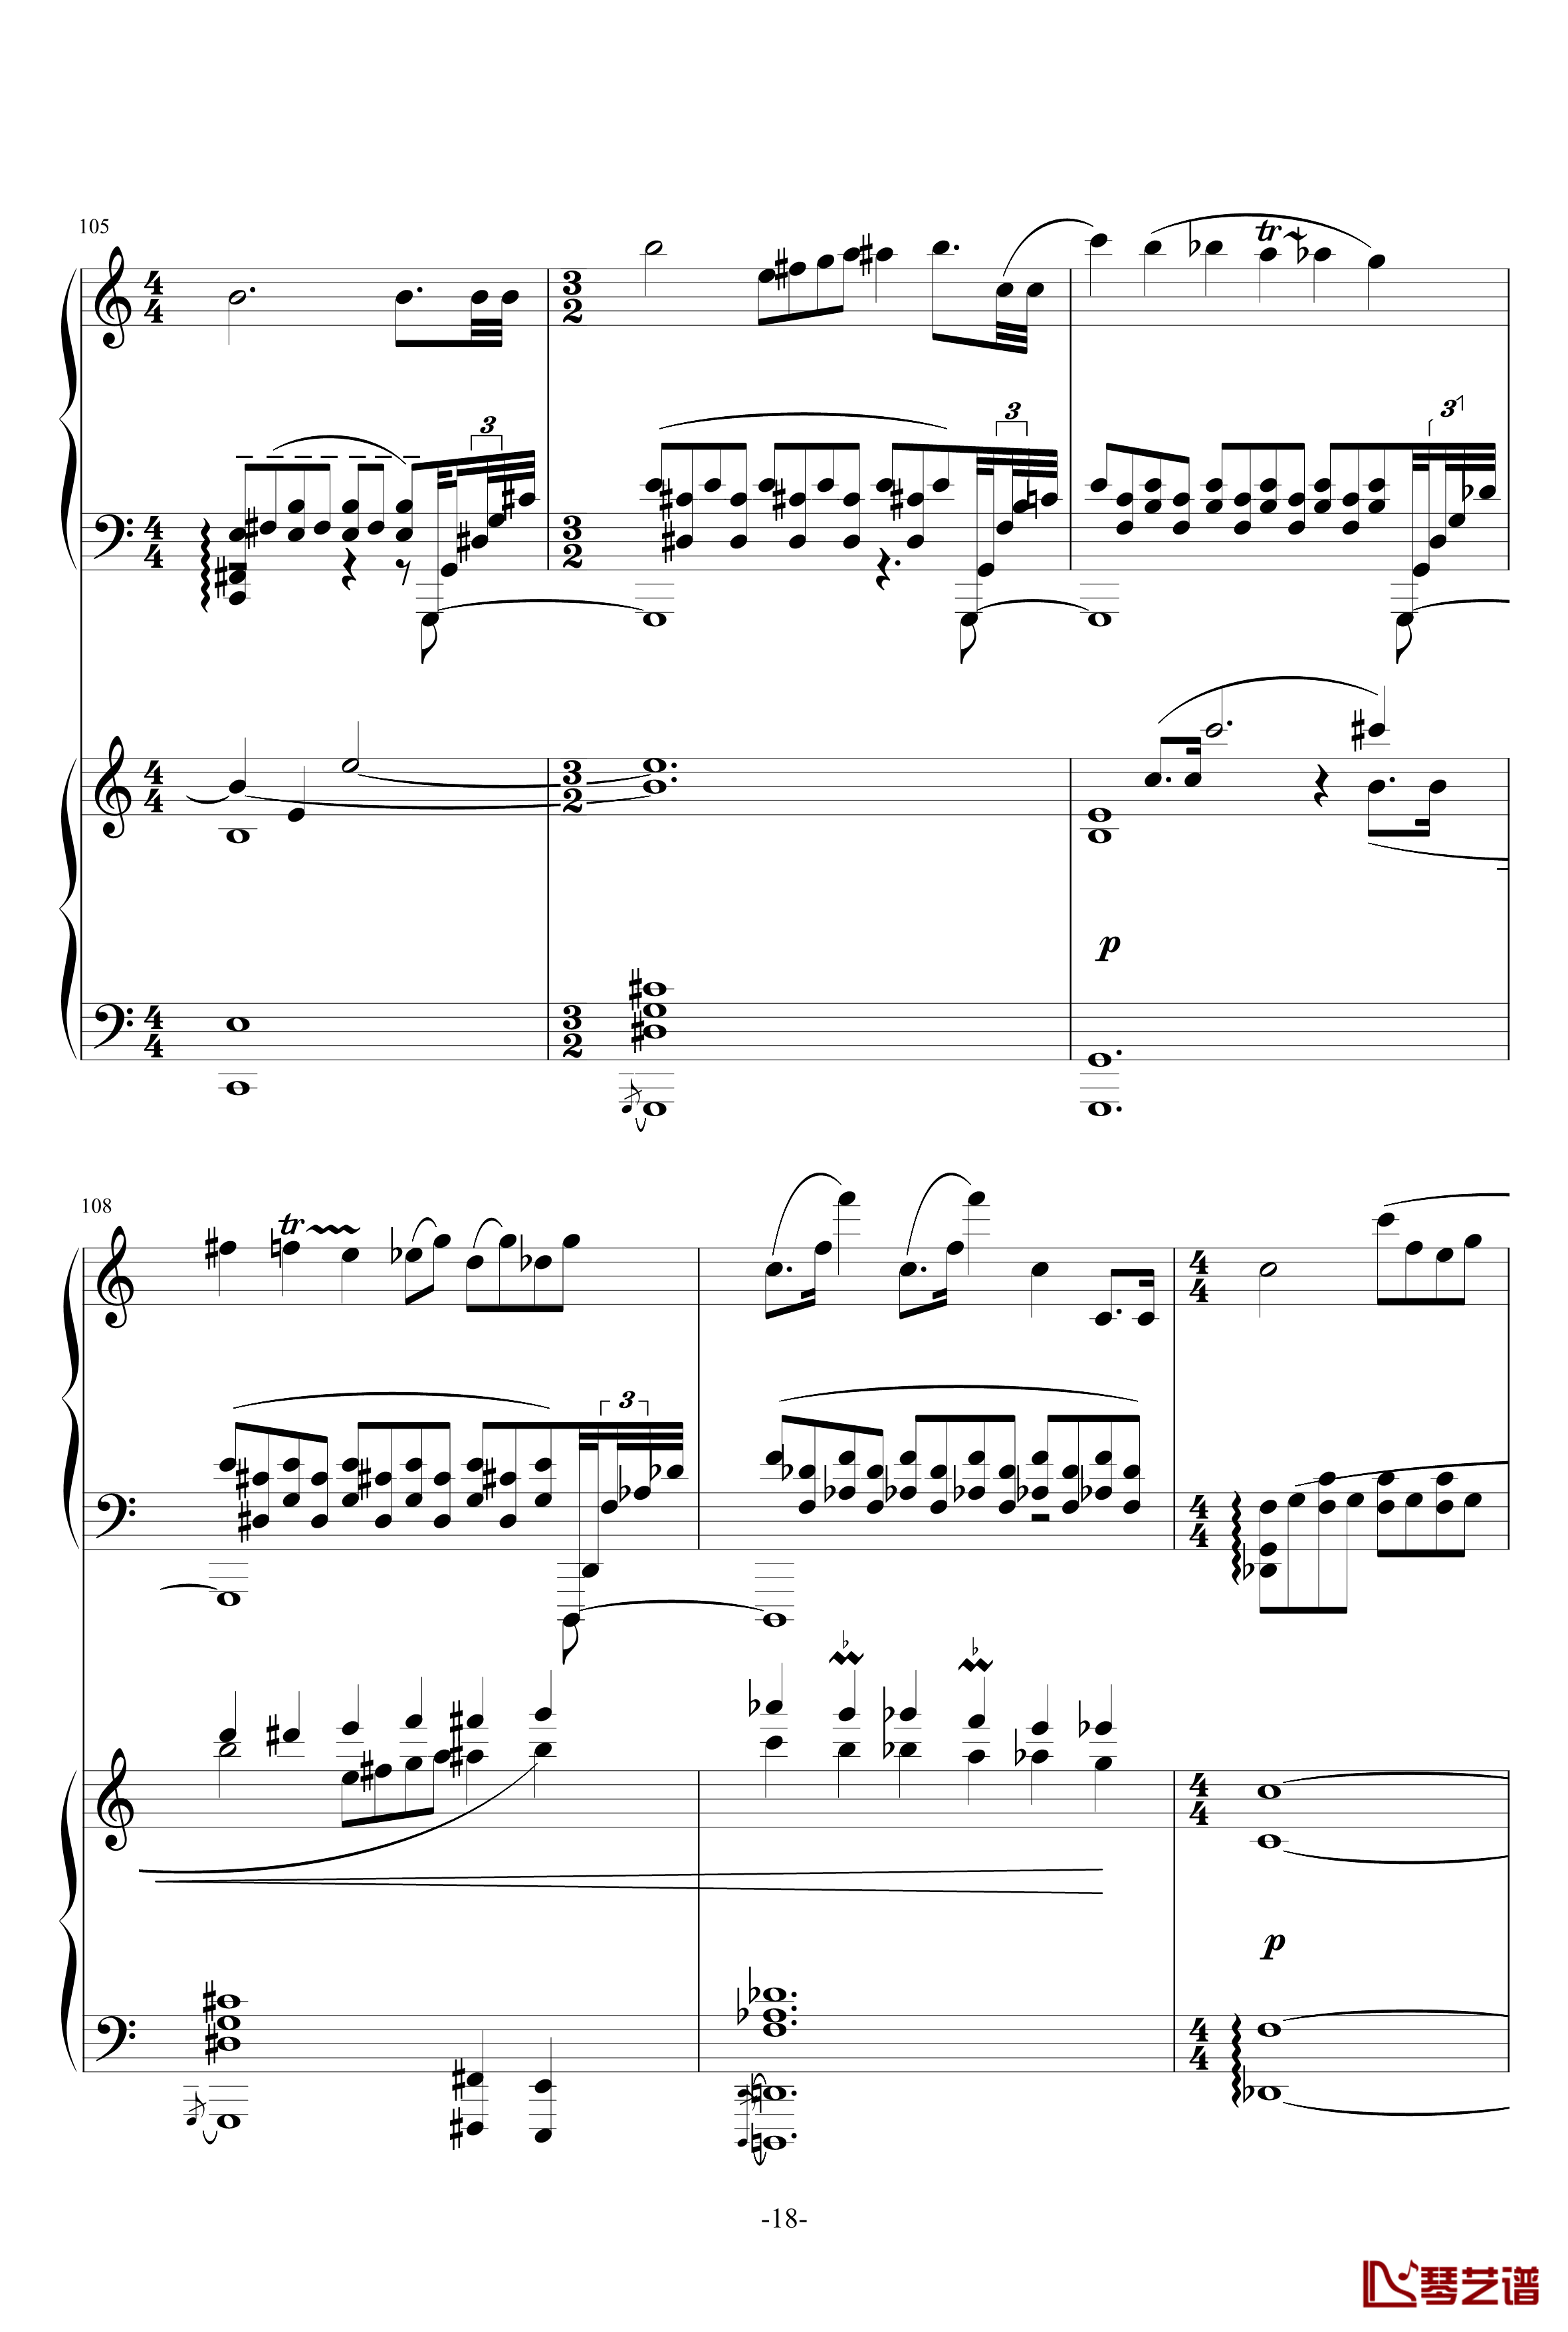 普罗科菲耶夫第三钢琴协奏曲第二乐章钢琴谱18